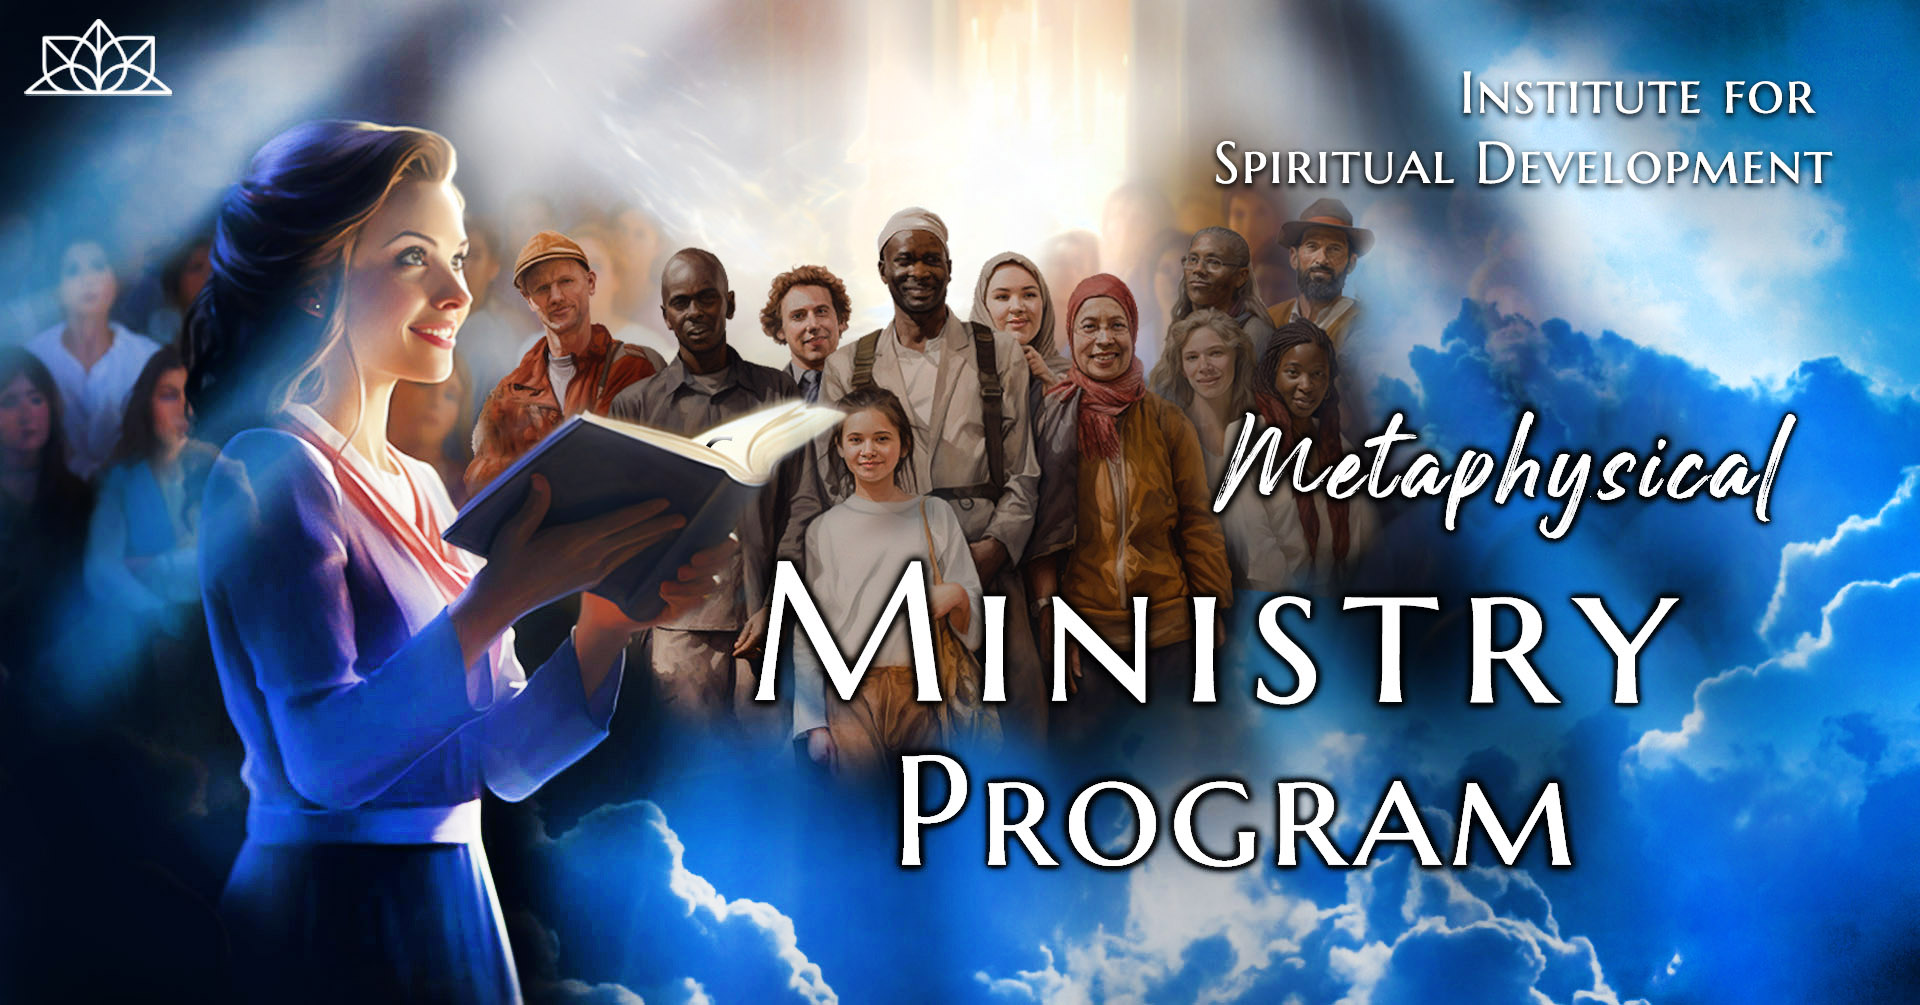 ISD Ministry Program